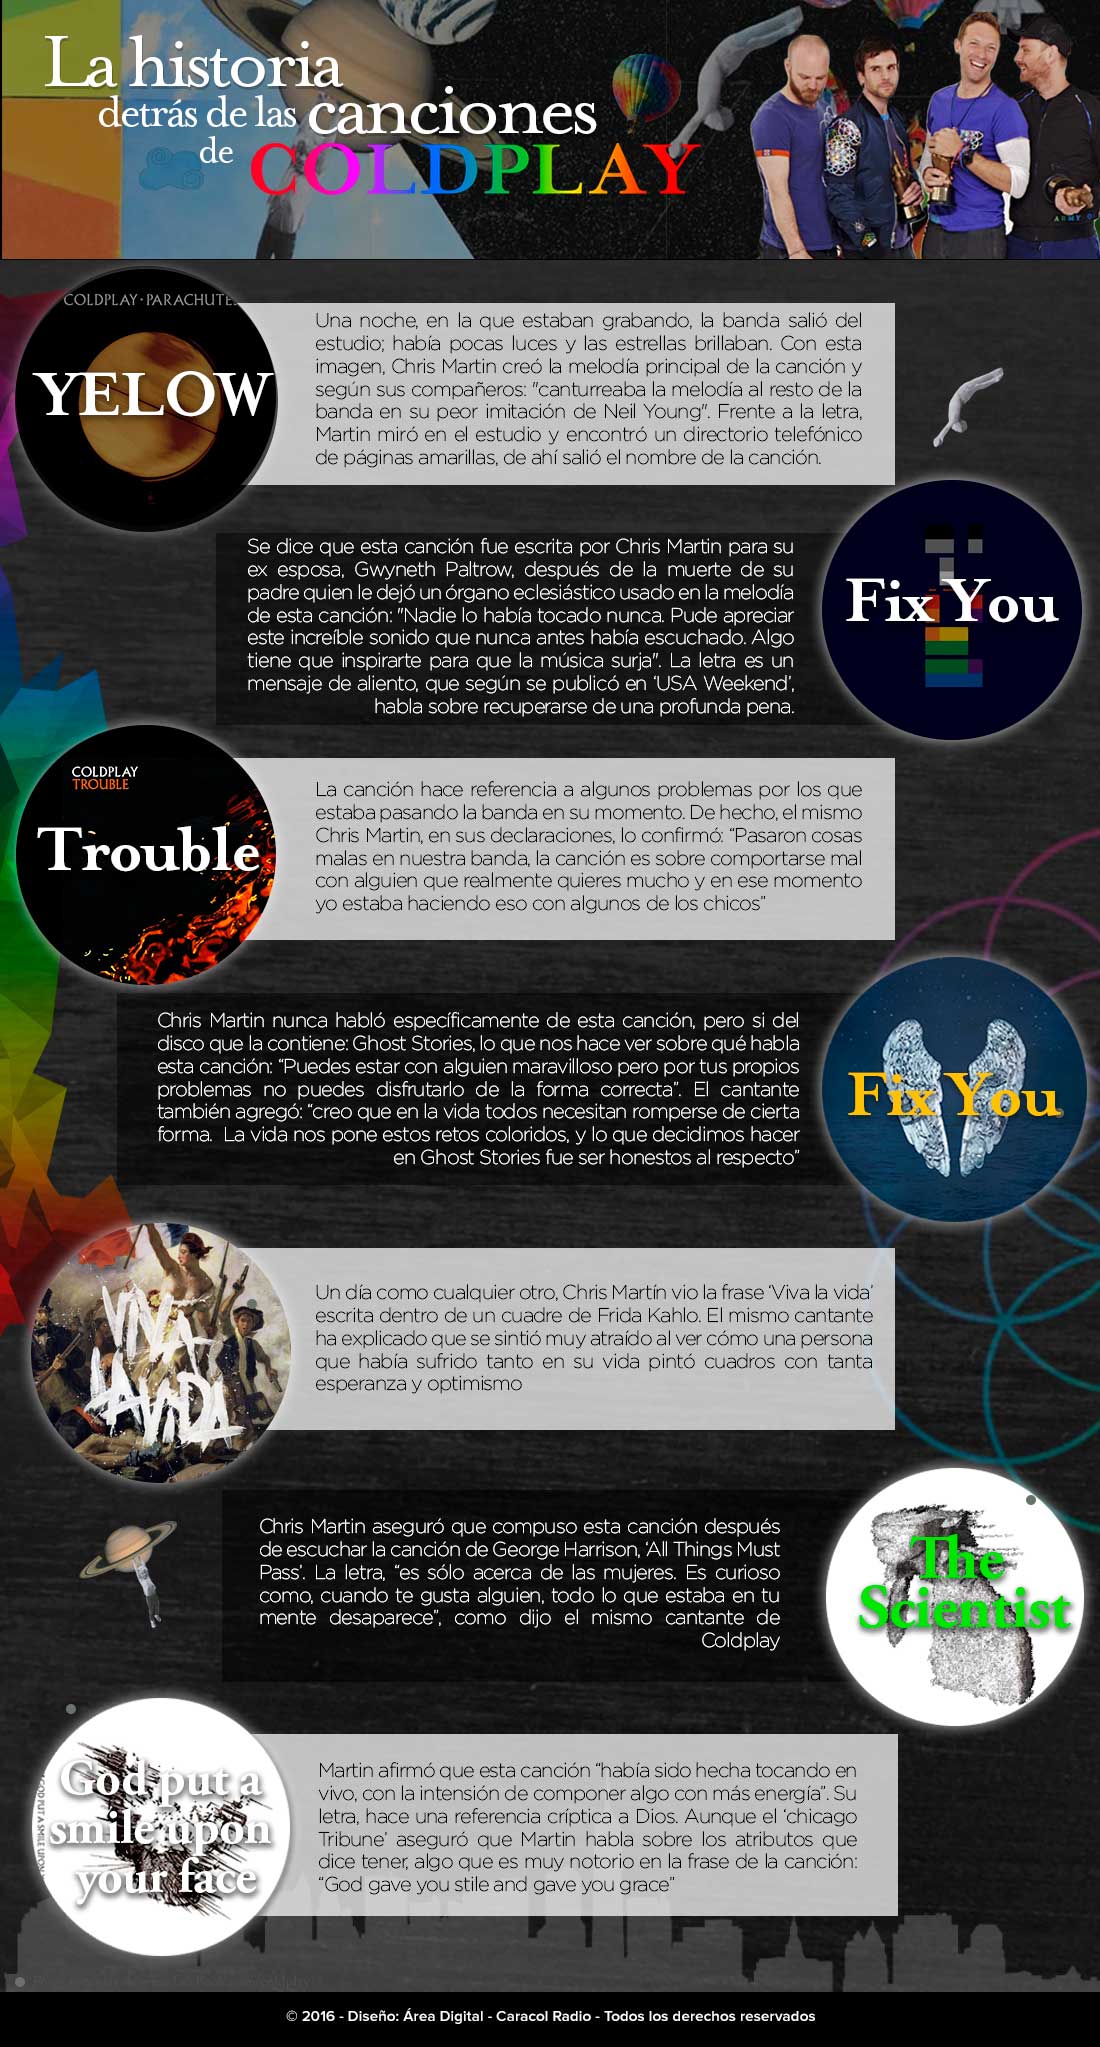 La historia detrás de las canciones de Coldplay - Radioacktiva.com